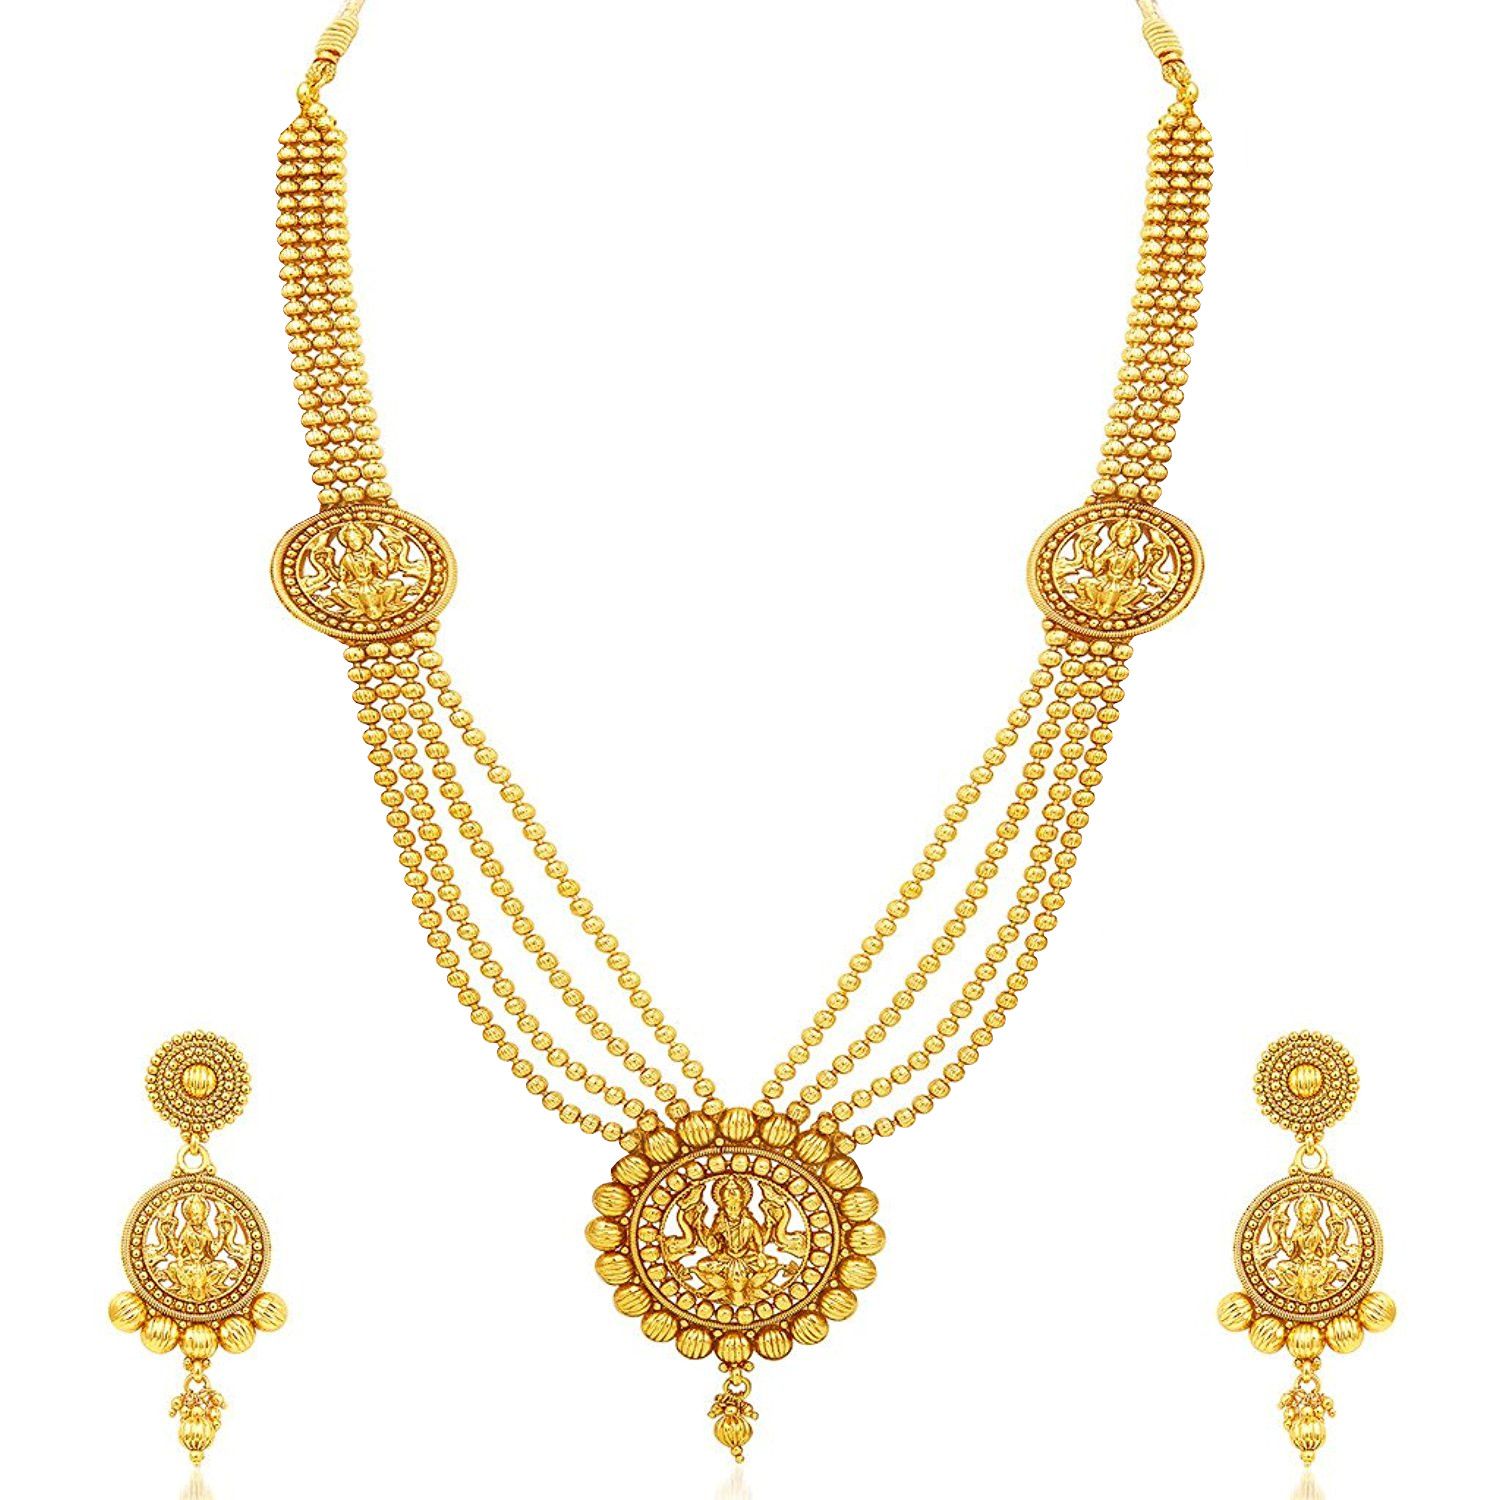 Jadau Jewellery - Buy Jadau Jewellery Online in India at Best Prices ...